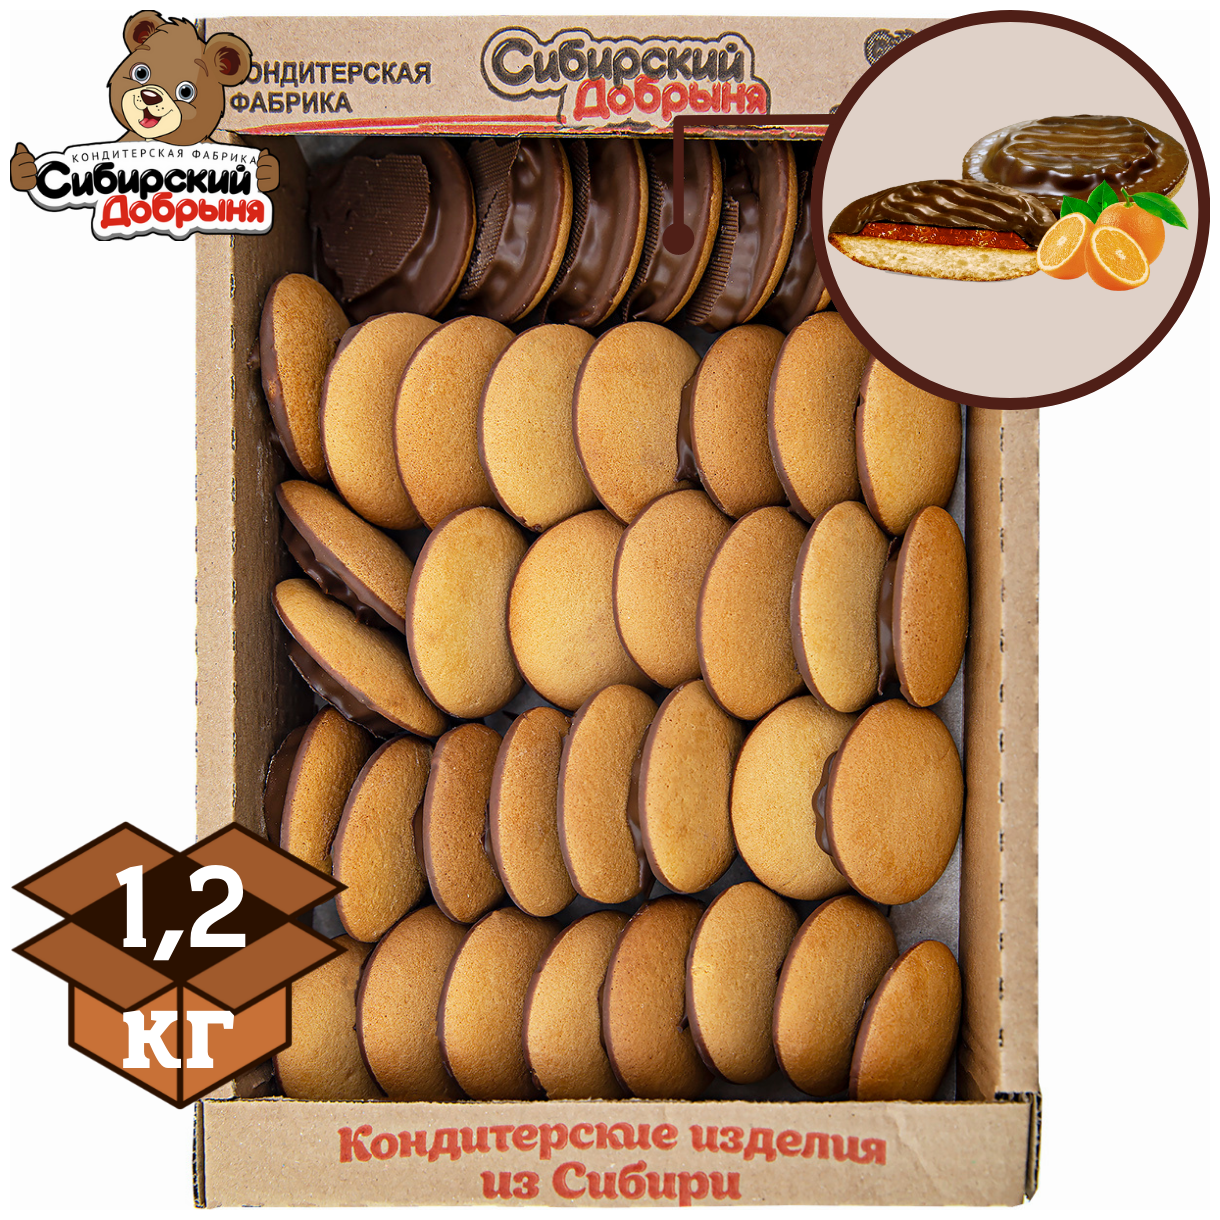 Печенье бисквитное бискви-шок с начинкой желе со вкусом апельсина в темной глазури, 1,2 кг , мишка в малиннике , Сибирский добрыня